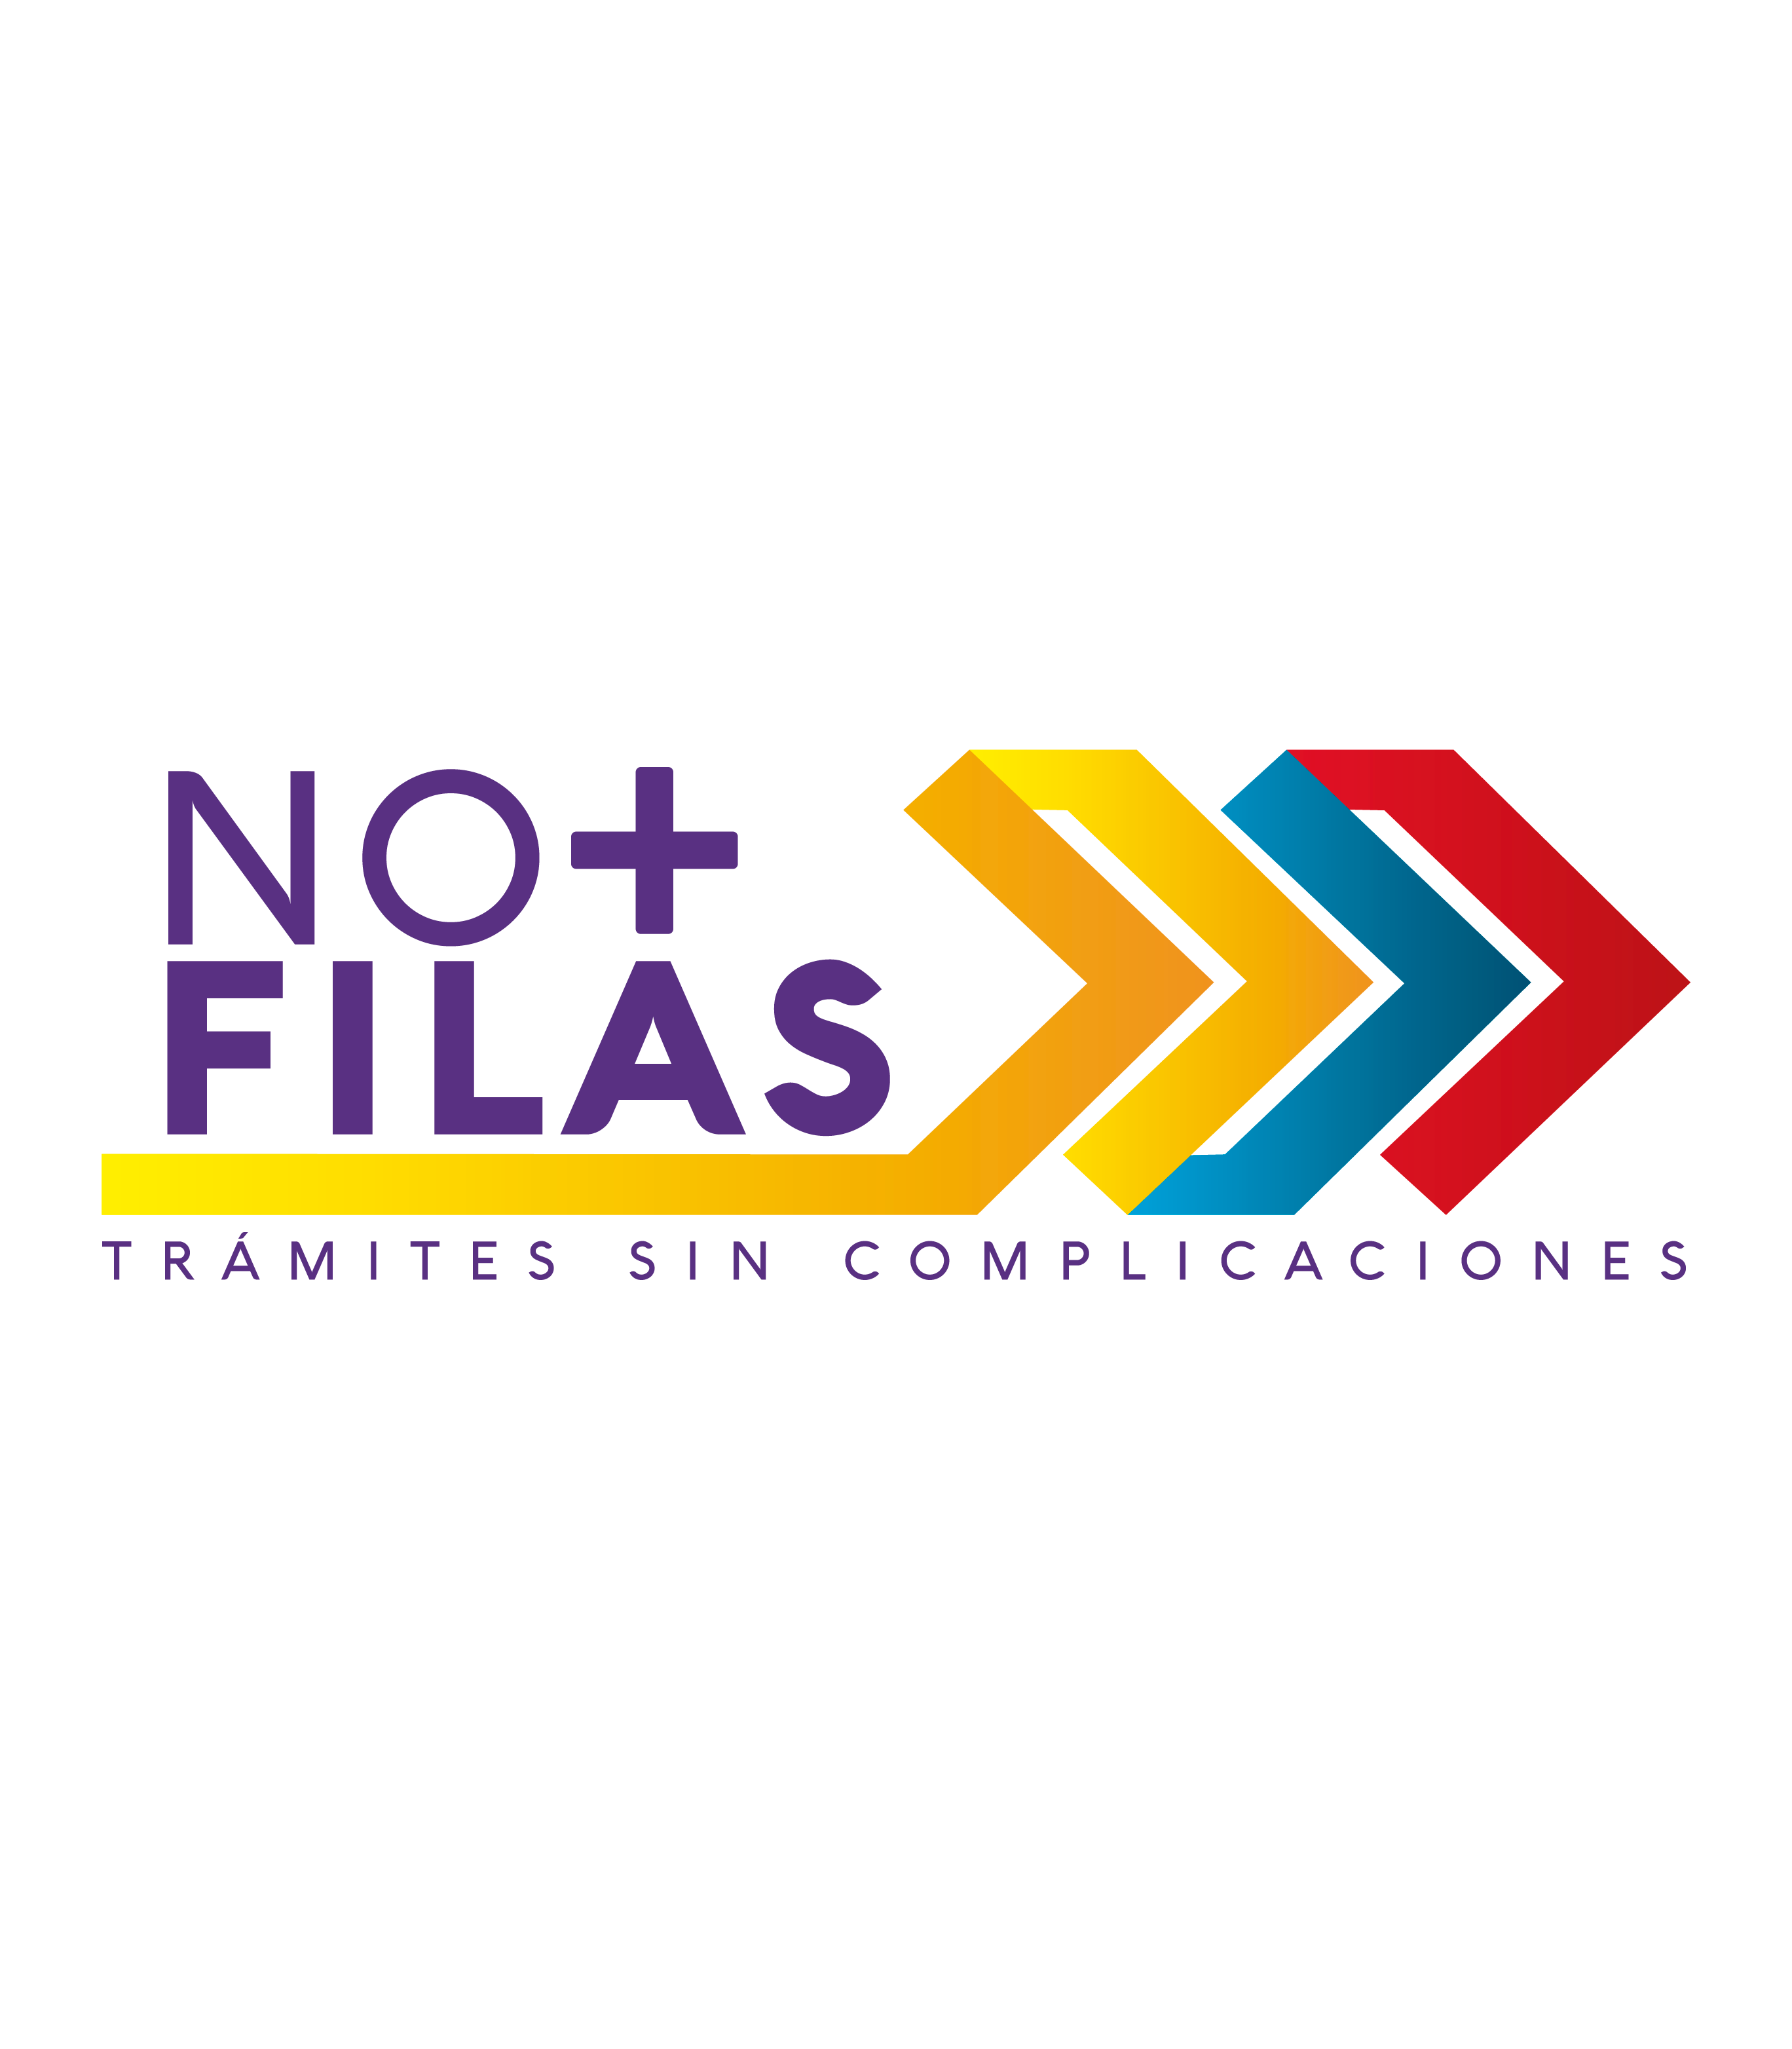 No + FIlas